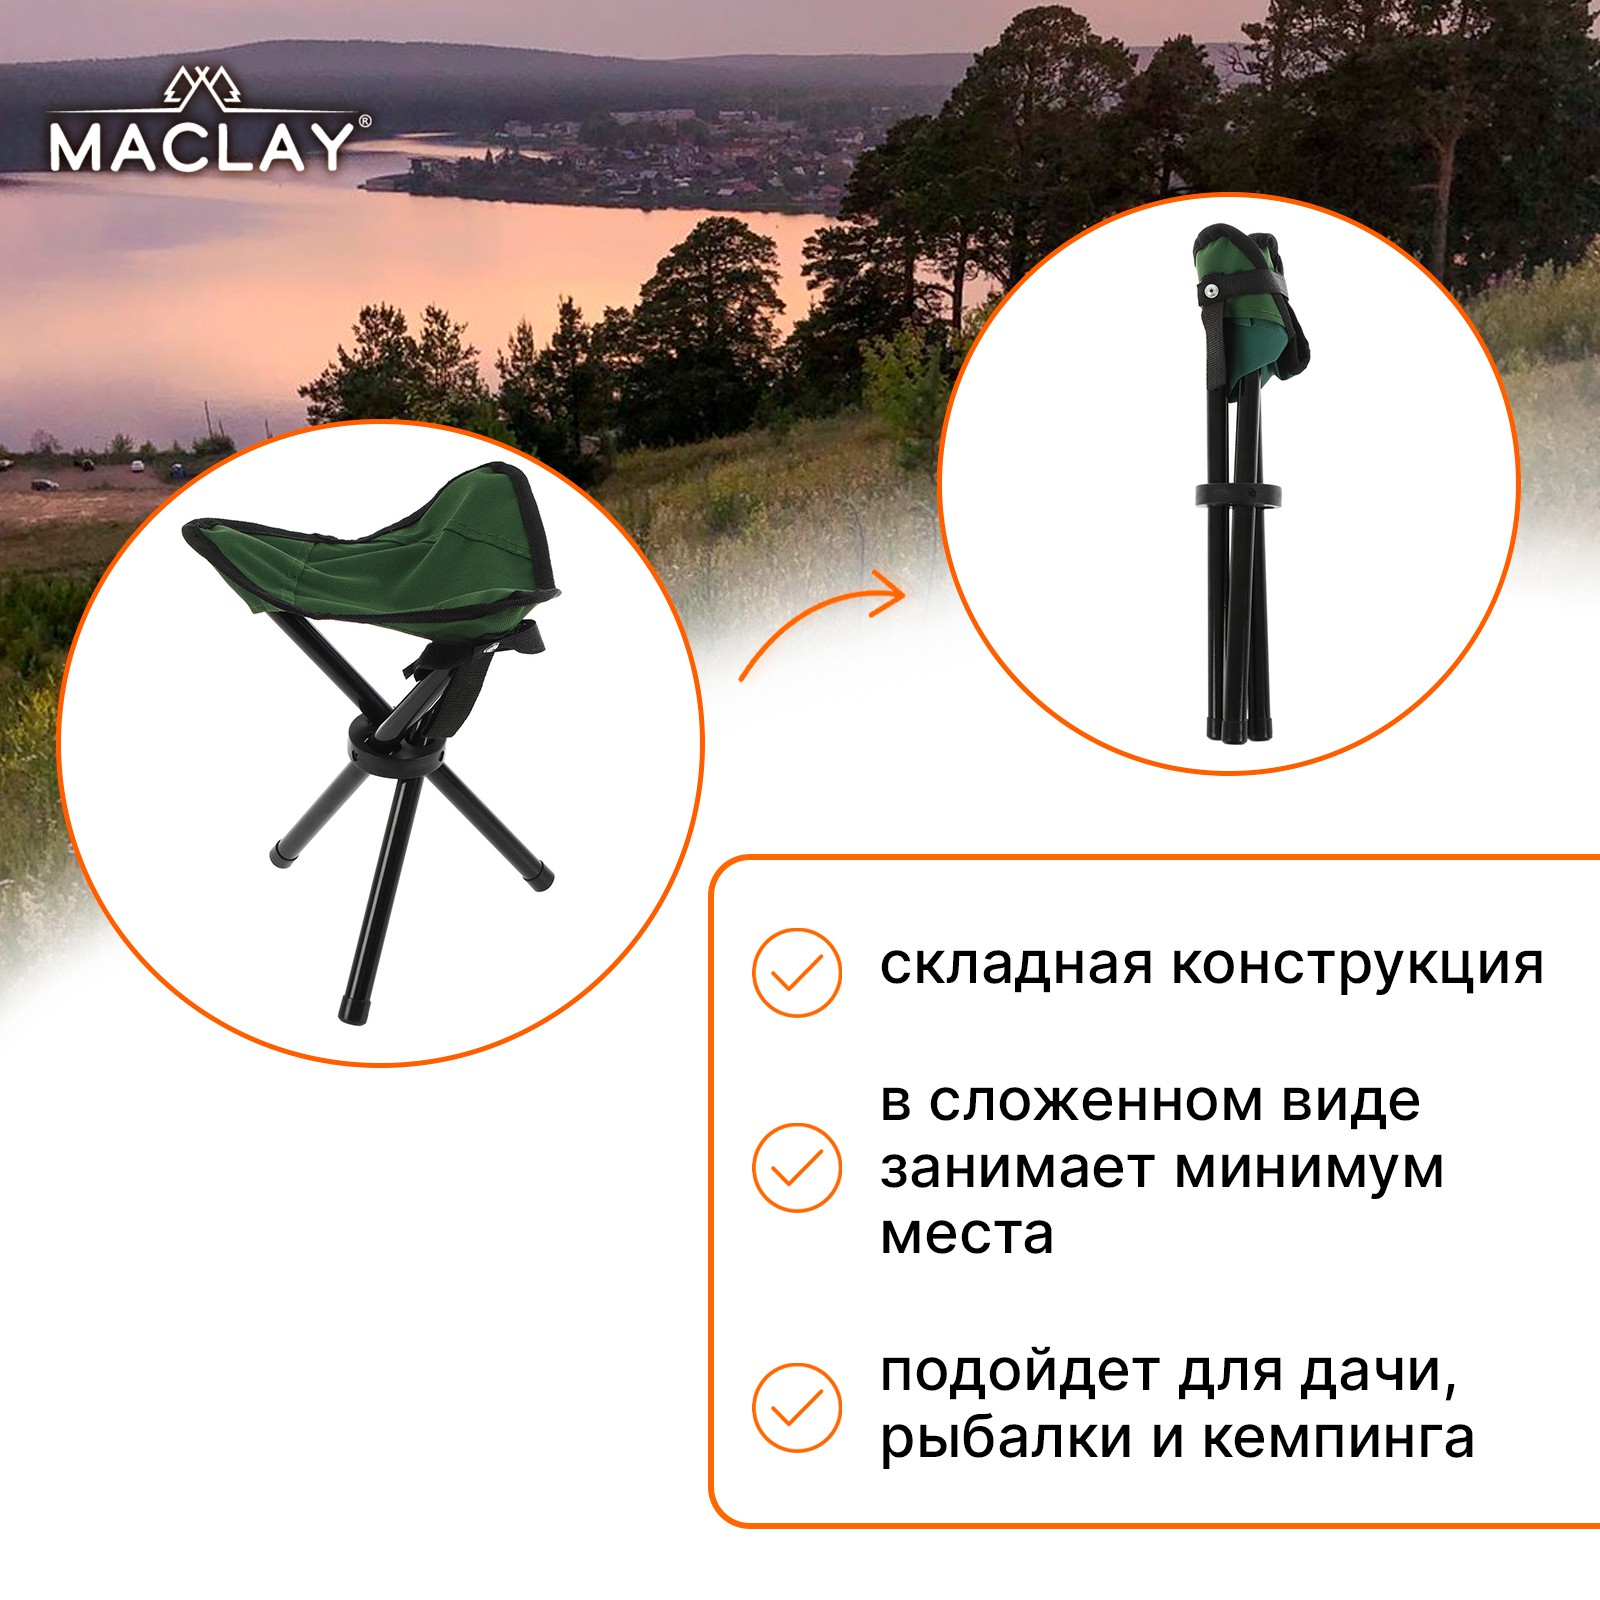 Стул туристический Maclay 22х20х30 см до 60кг зелёный - фото 2